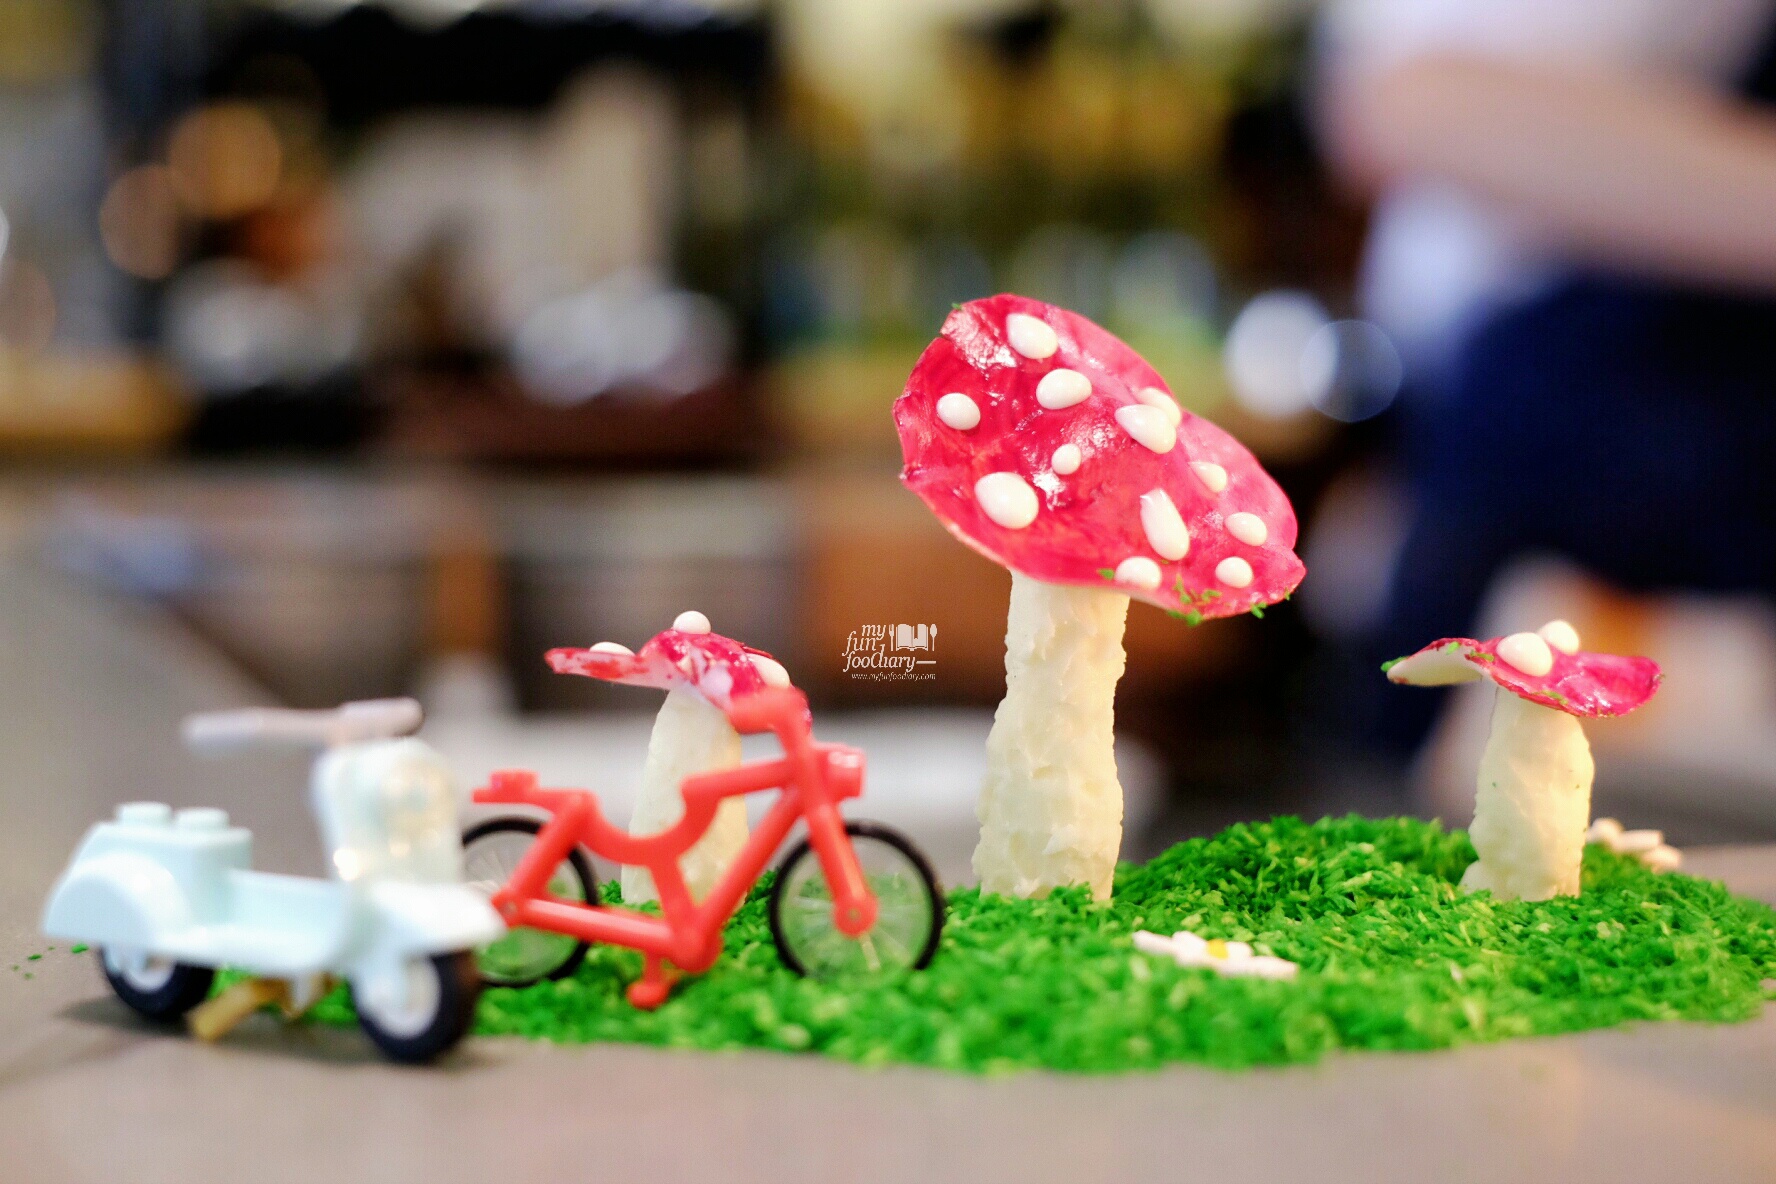 Edible Mushroom by Kim Pangestu at Nomz by Myfunfoodiary